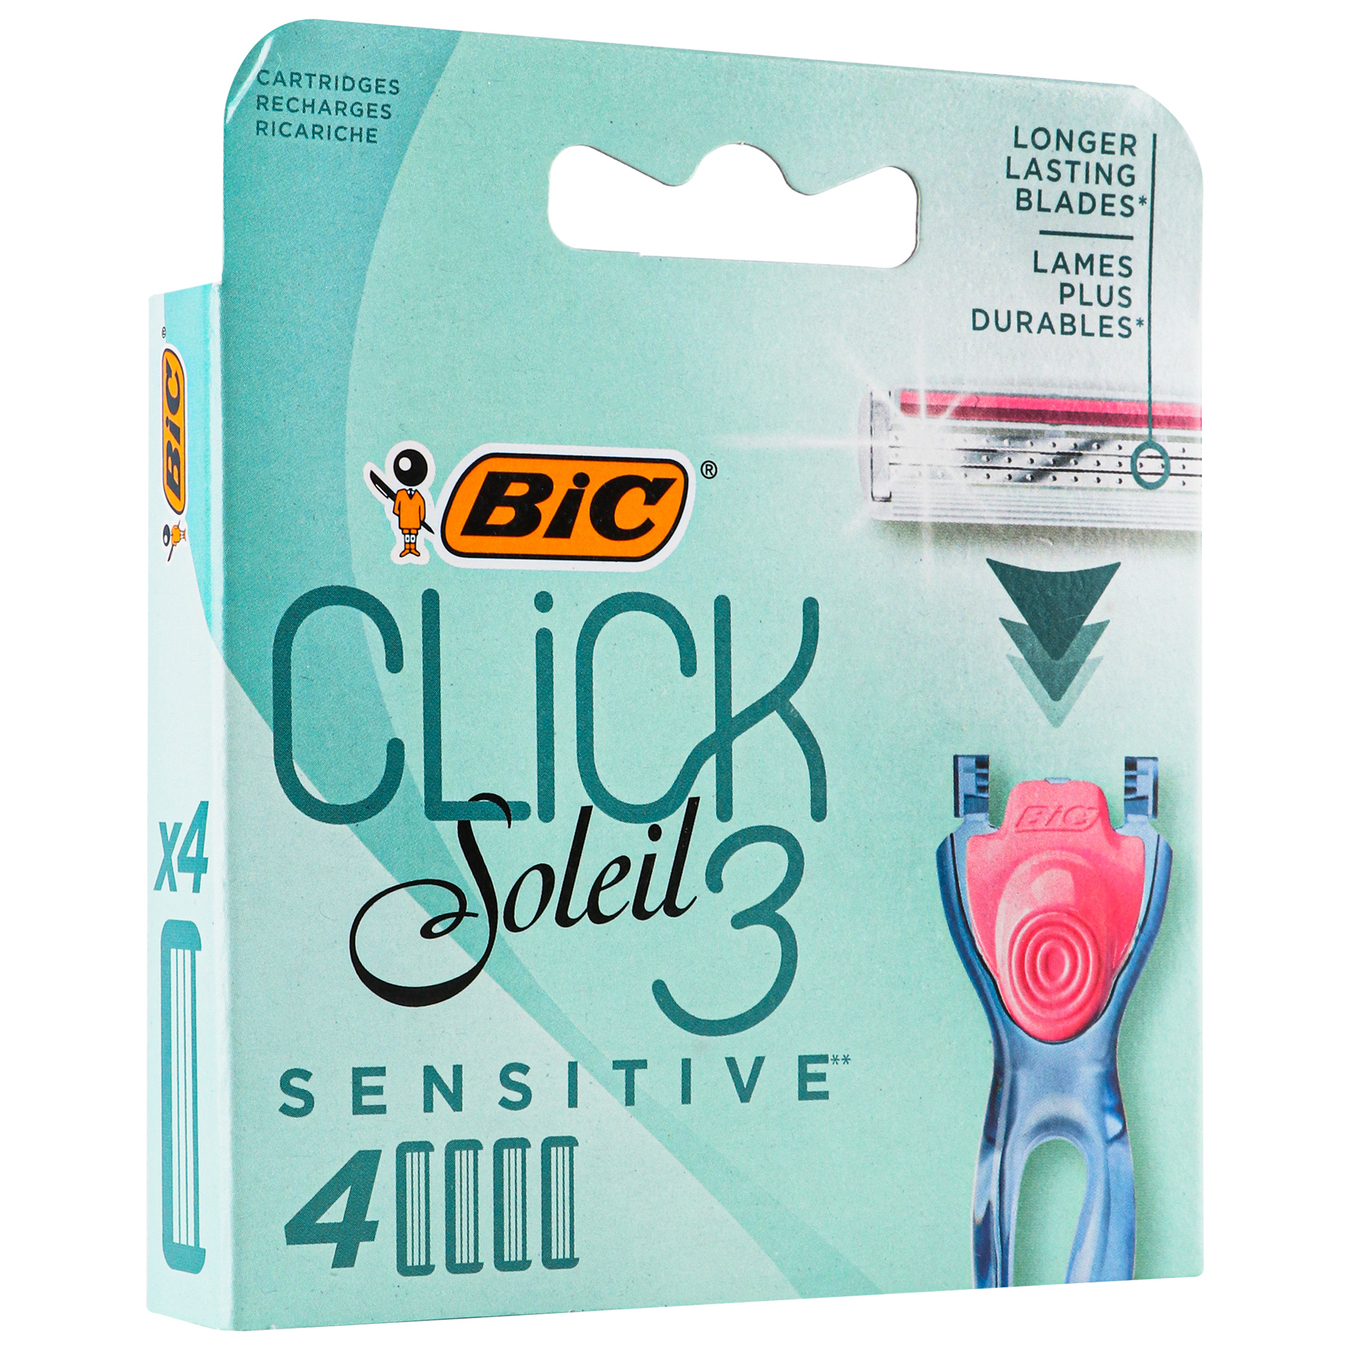 Сменные кассеты BIC Click Soleil 3 для бритья женские 4 шт 2